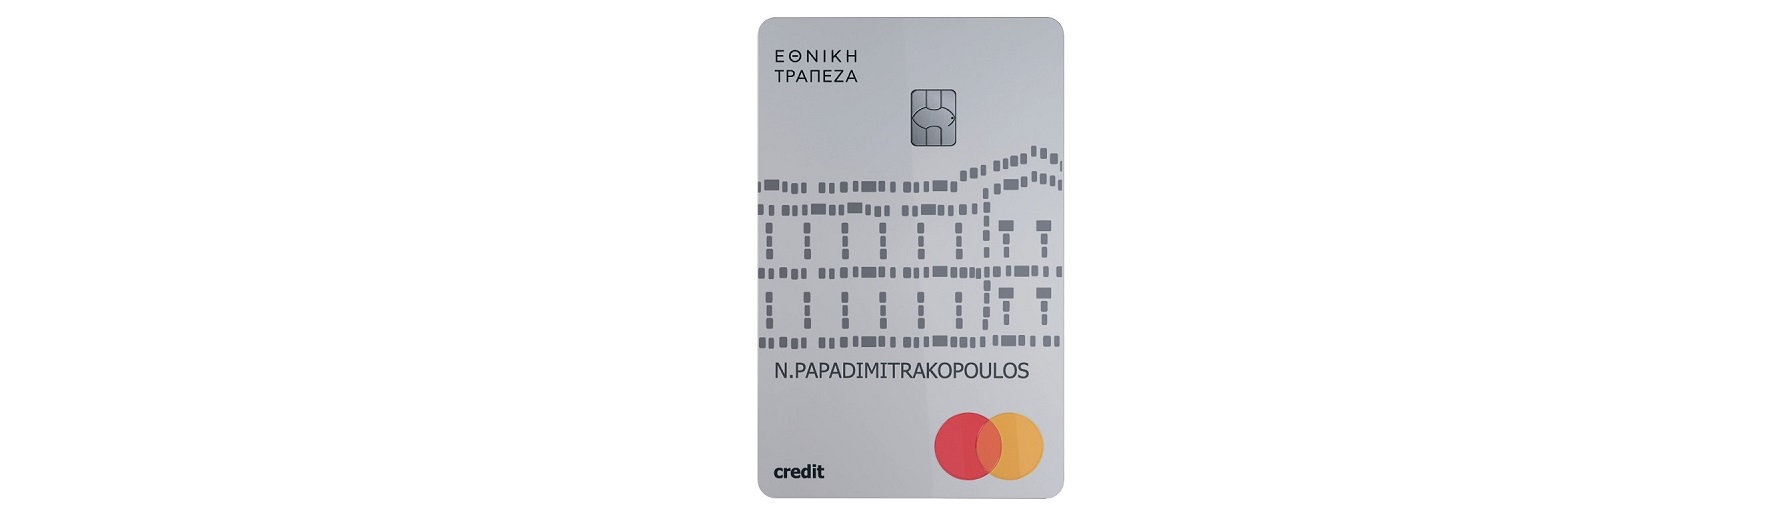 Πιστωτική κάρτα Silver από την Εθνική Τράπεζα